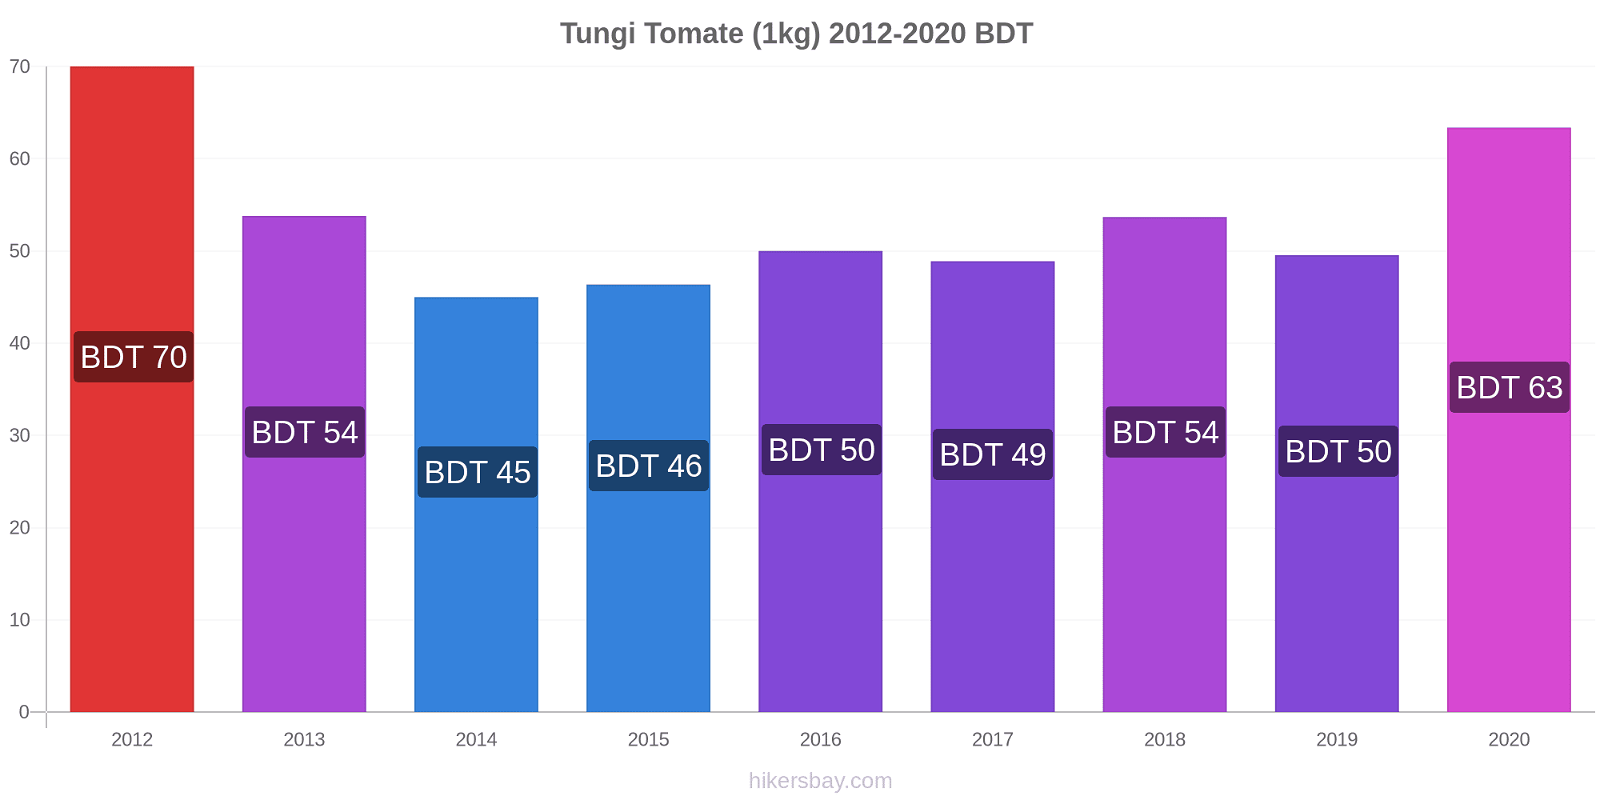 Tungi cambios de precios Tomate (1kg) hikersbay.com